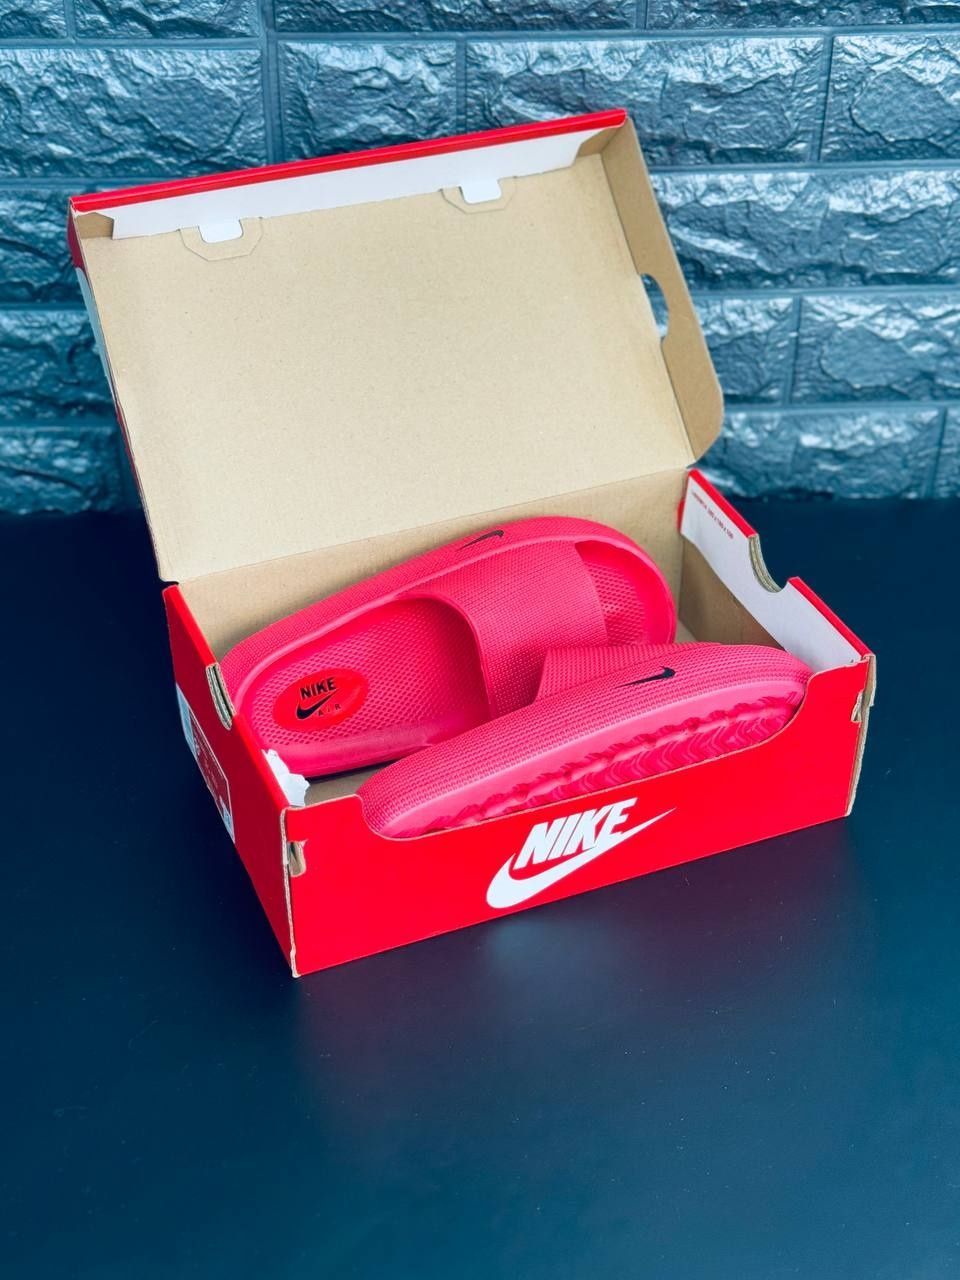 Женские шлёпанцы Nike тапочки уличные Найк червоного цвета 36-41